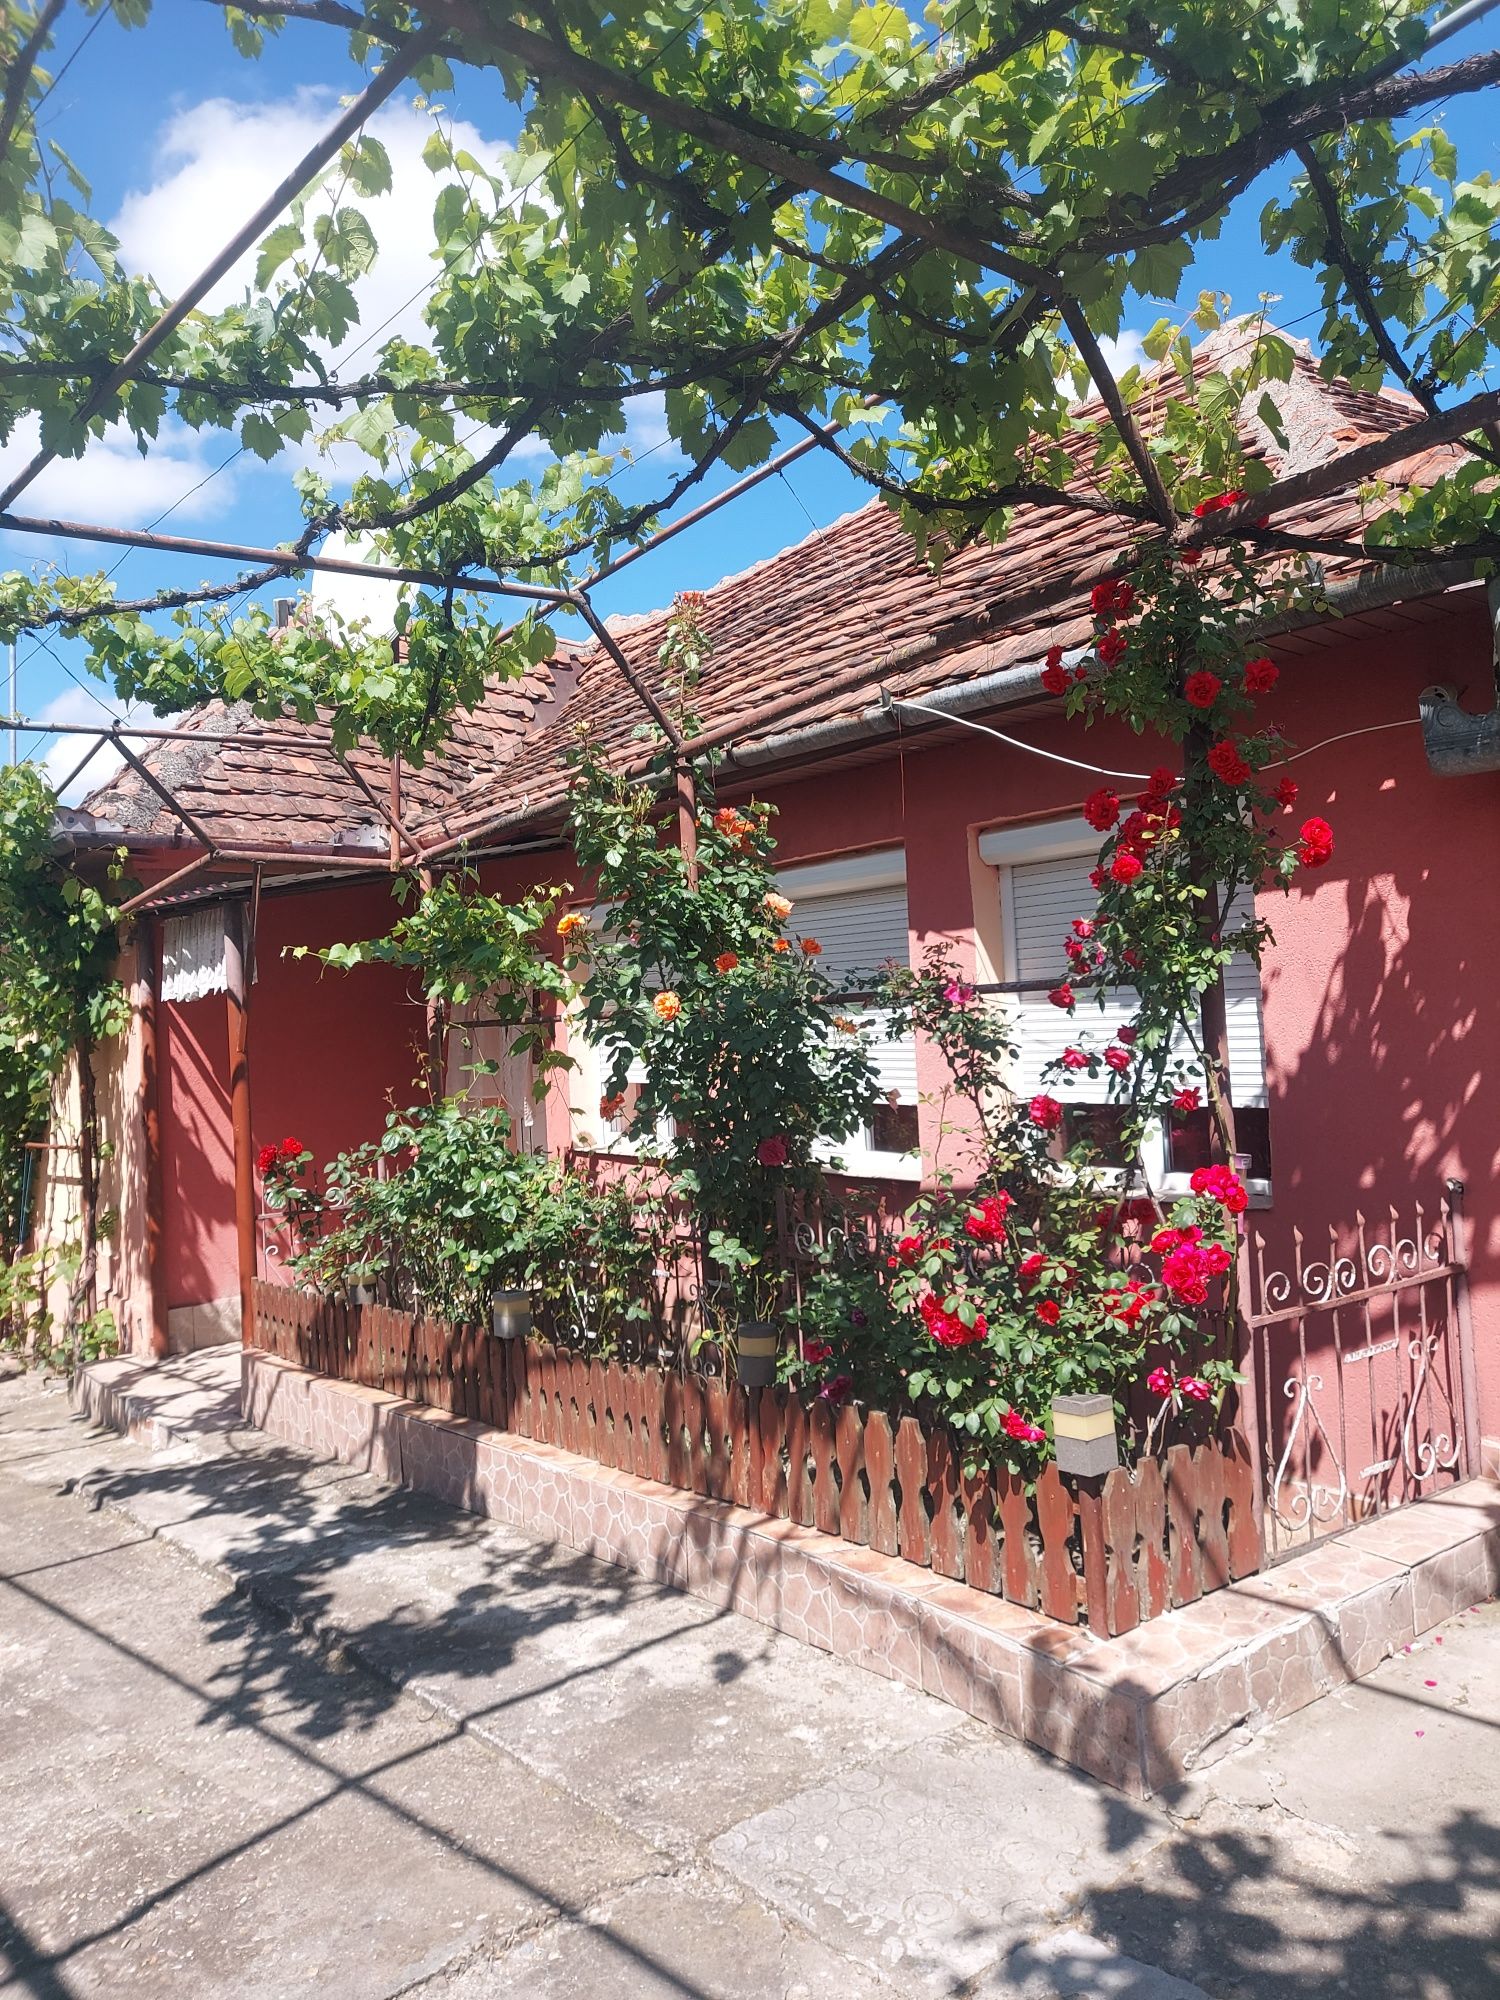 Casa de vanzare in Sarand Comuna Copacel